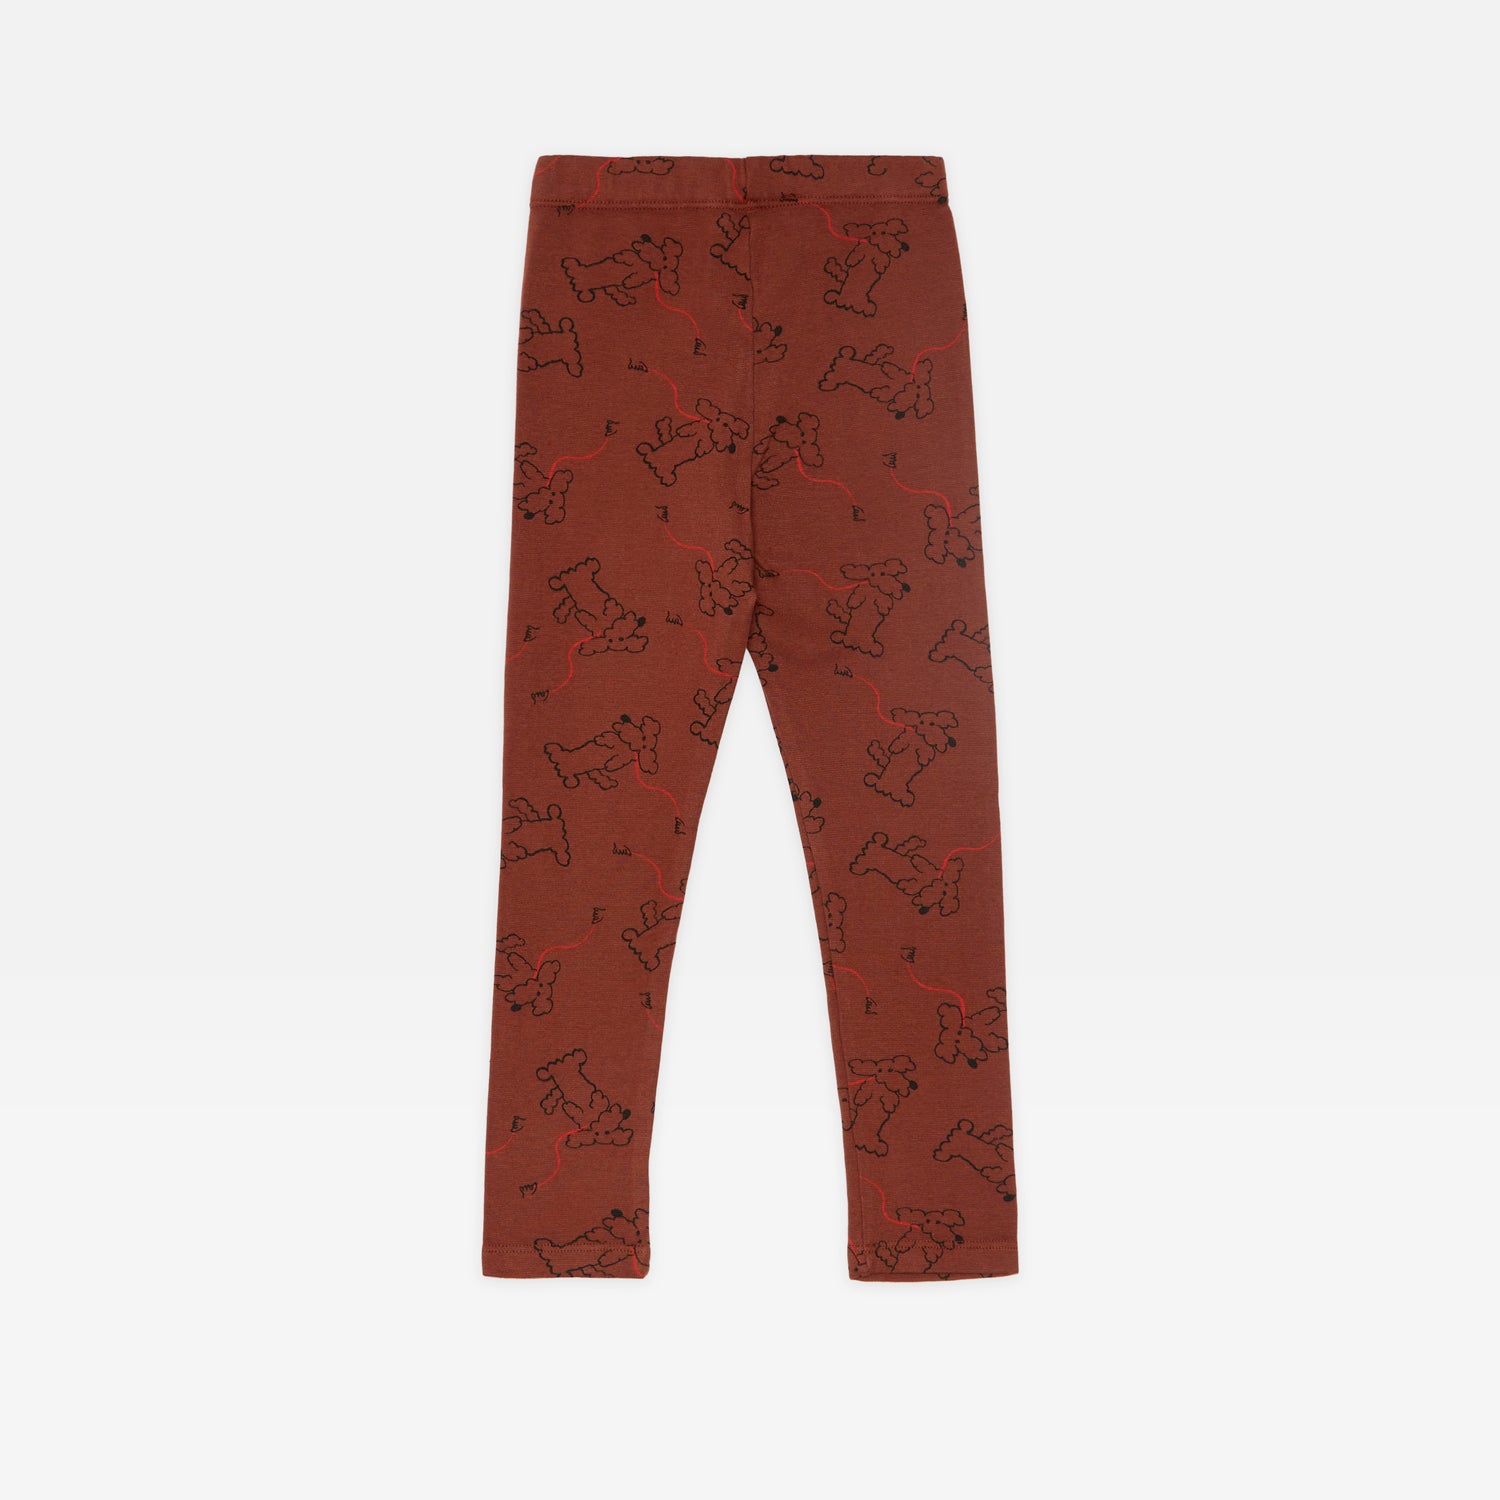 5 for $10 ⭐️ Fine Kids multicolor brown leggings size small